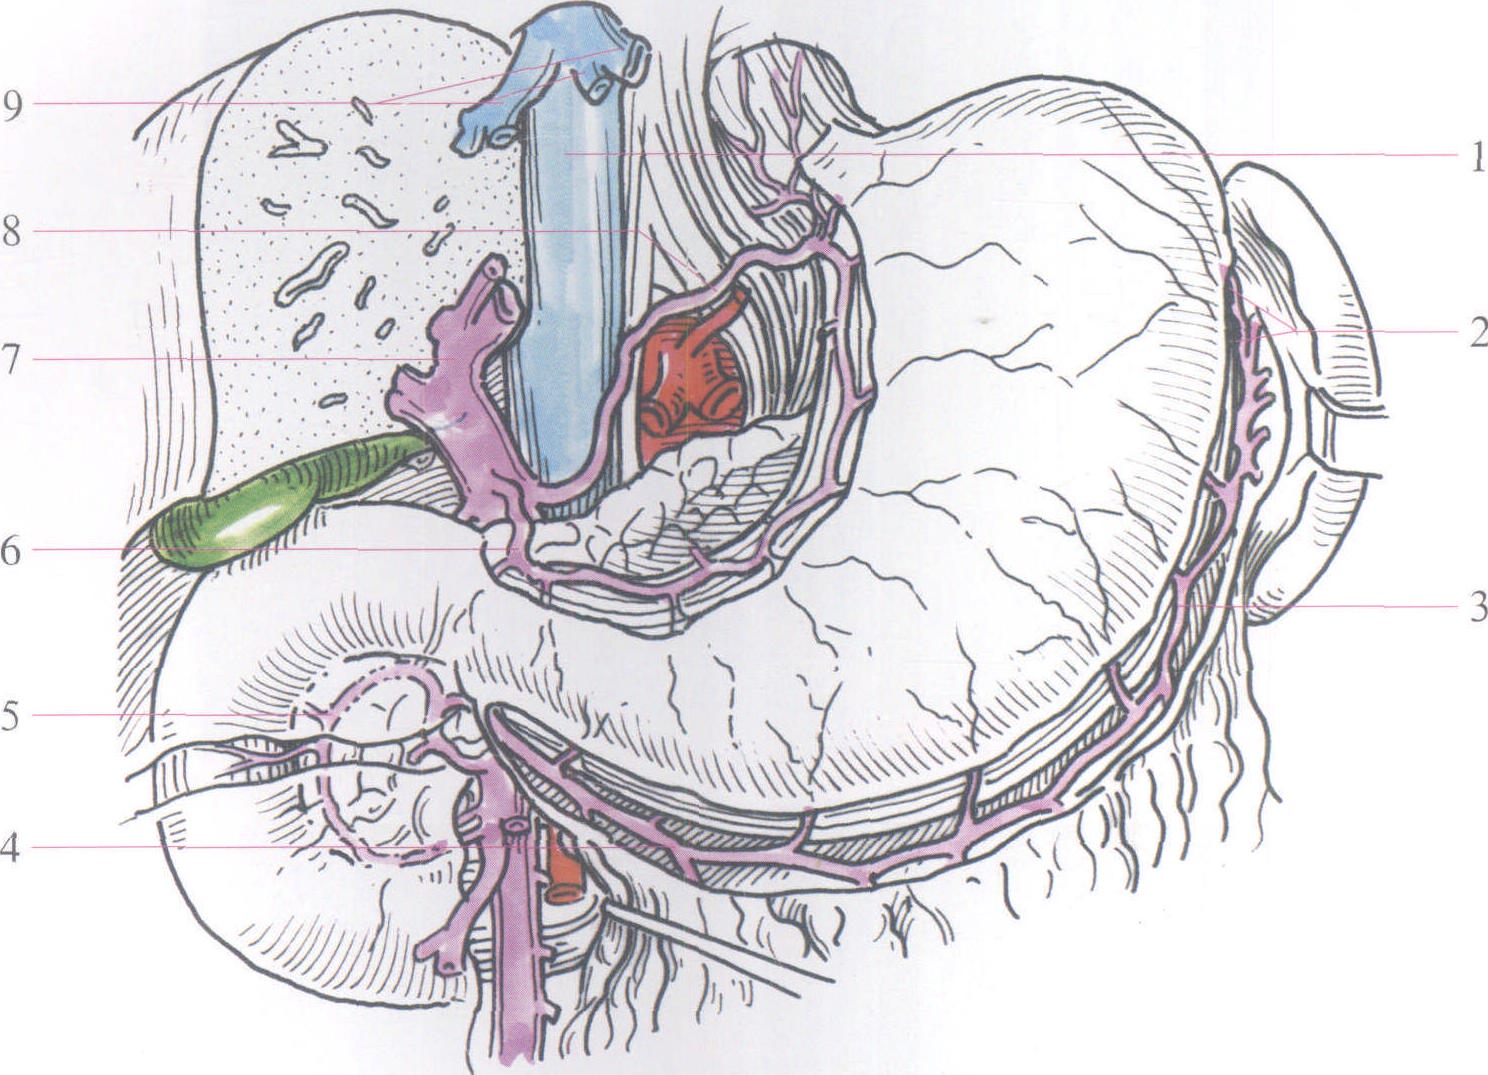 胃静脉解剖图图片